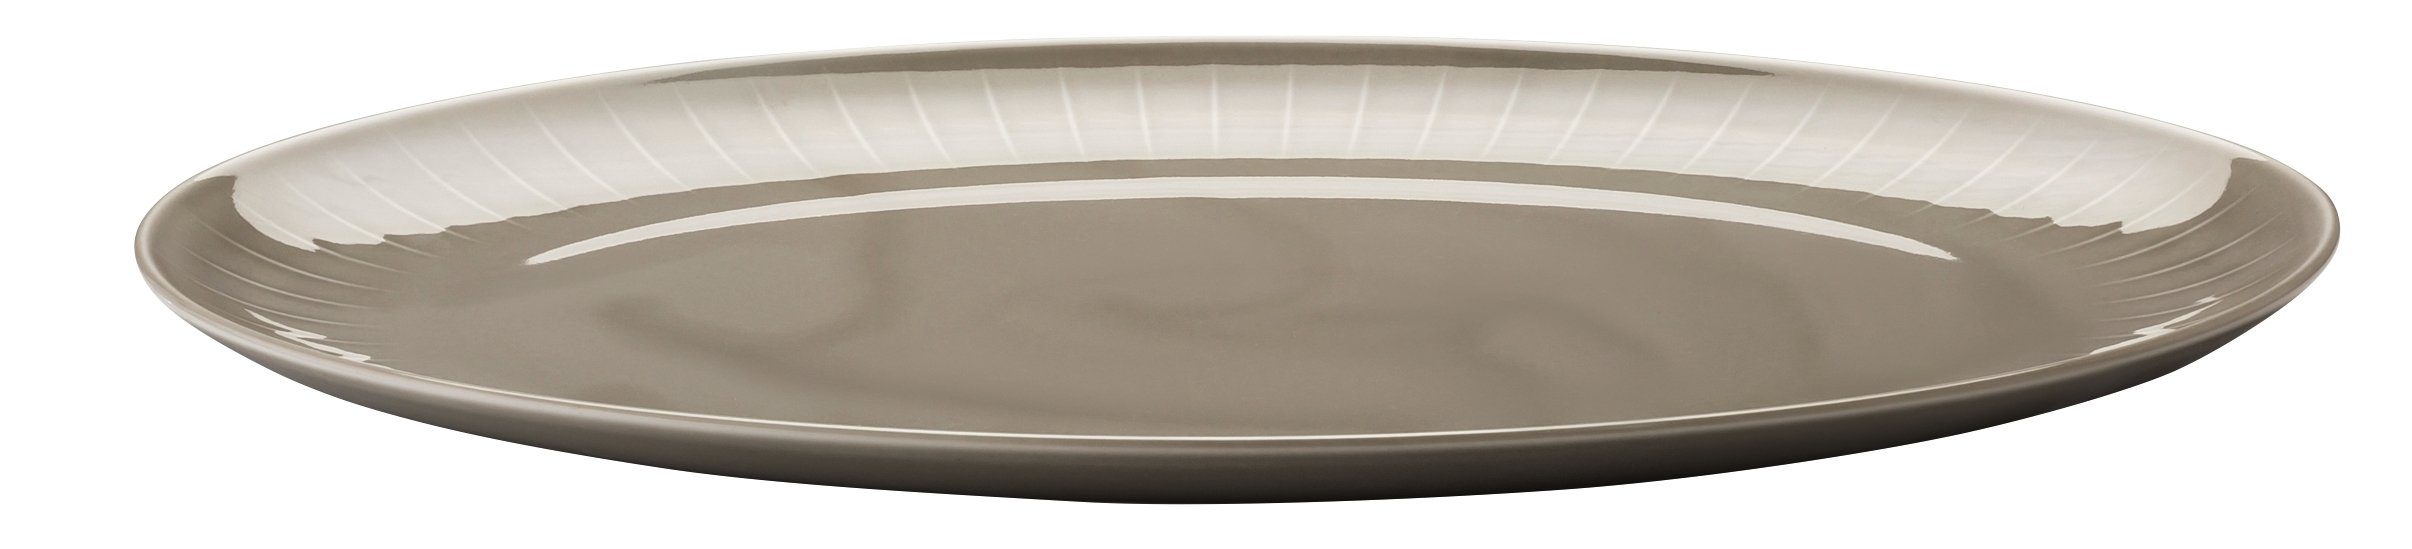 ARZBERG Servierplatte Joyn Grau Platte 38 cm, Porzellan, (Platten)